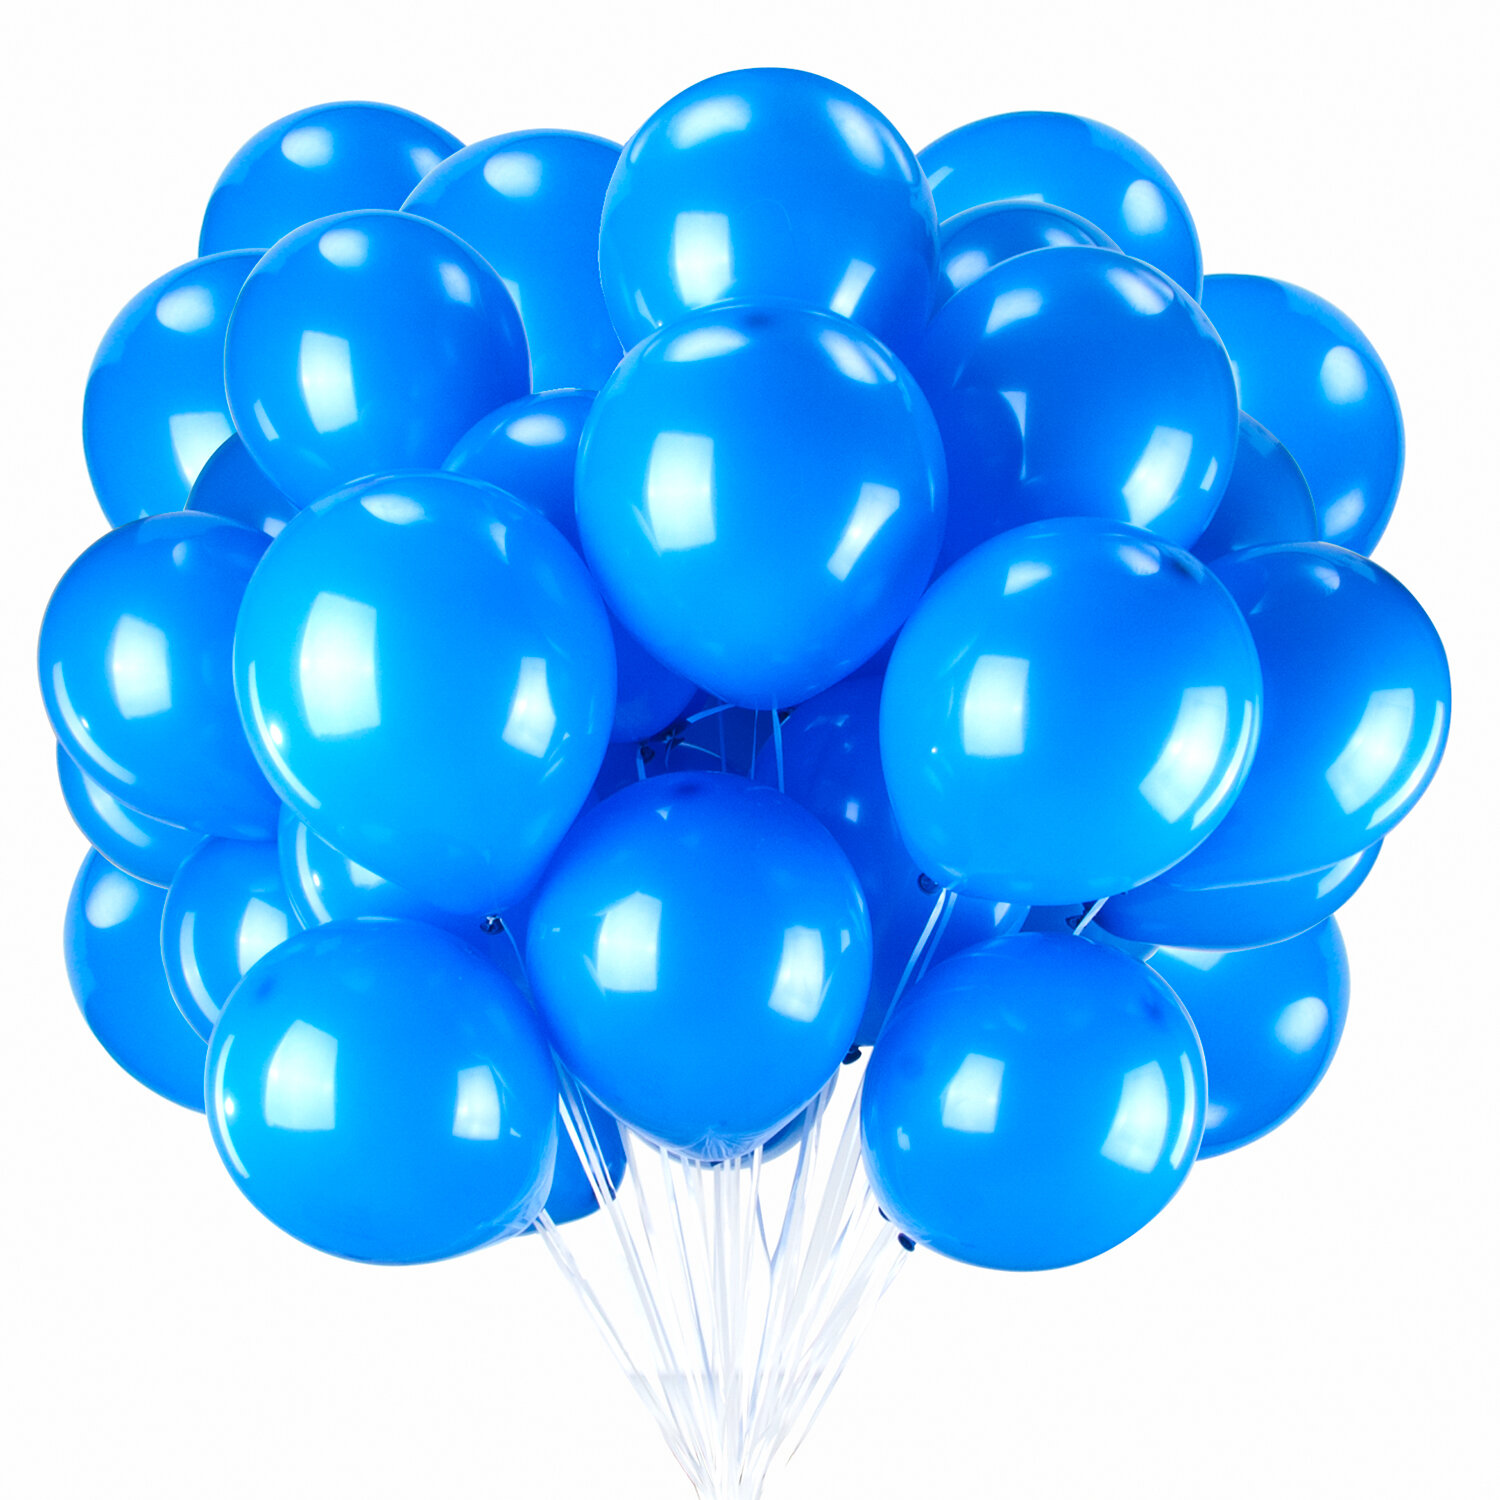 Шары воздушные Золотая Сказка 104999 синие, 25см, 2 упак х 50шт - 100 шаров шары воздушные золотая сказка 12 30см комплект 50шт ассорти 10цв рис c днем рождения паке